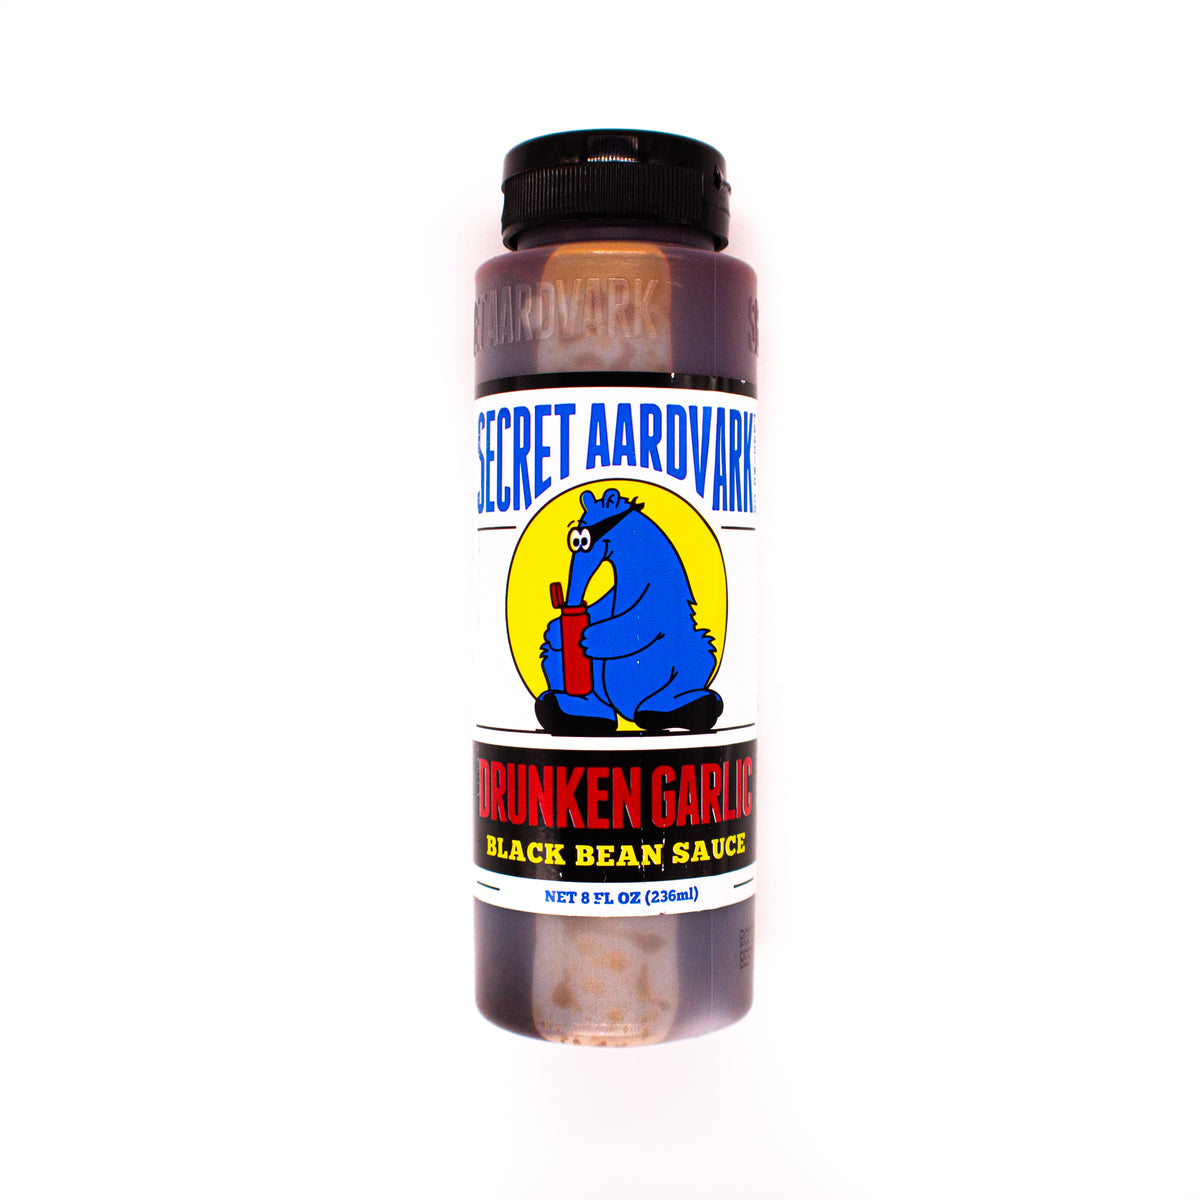 Secret Aardvark Sauce Drunken Garlic Black Bean